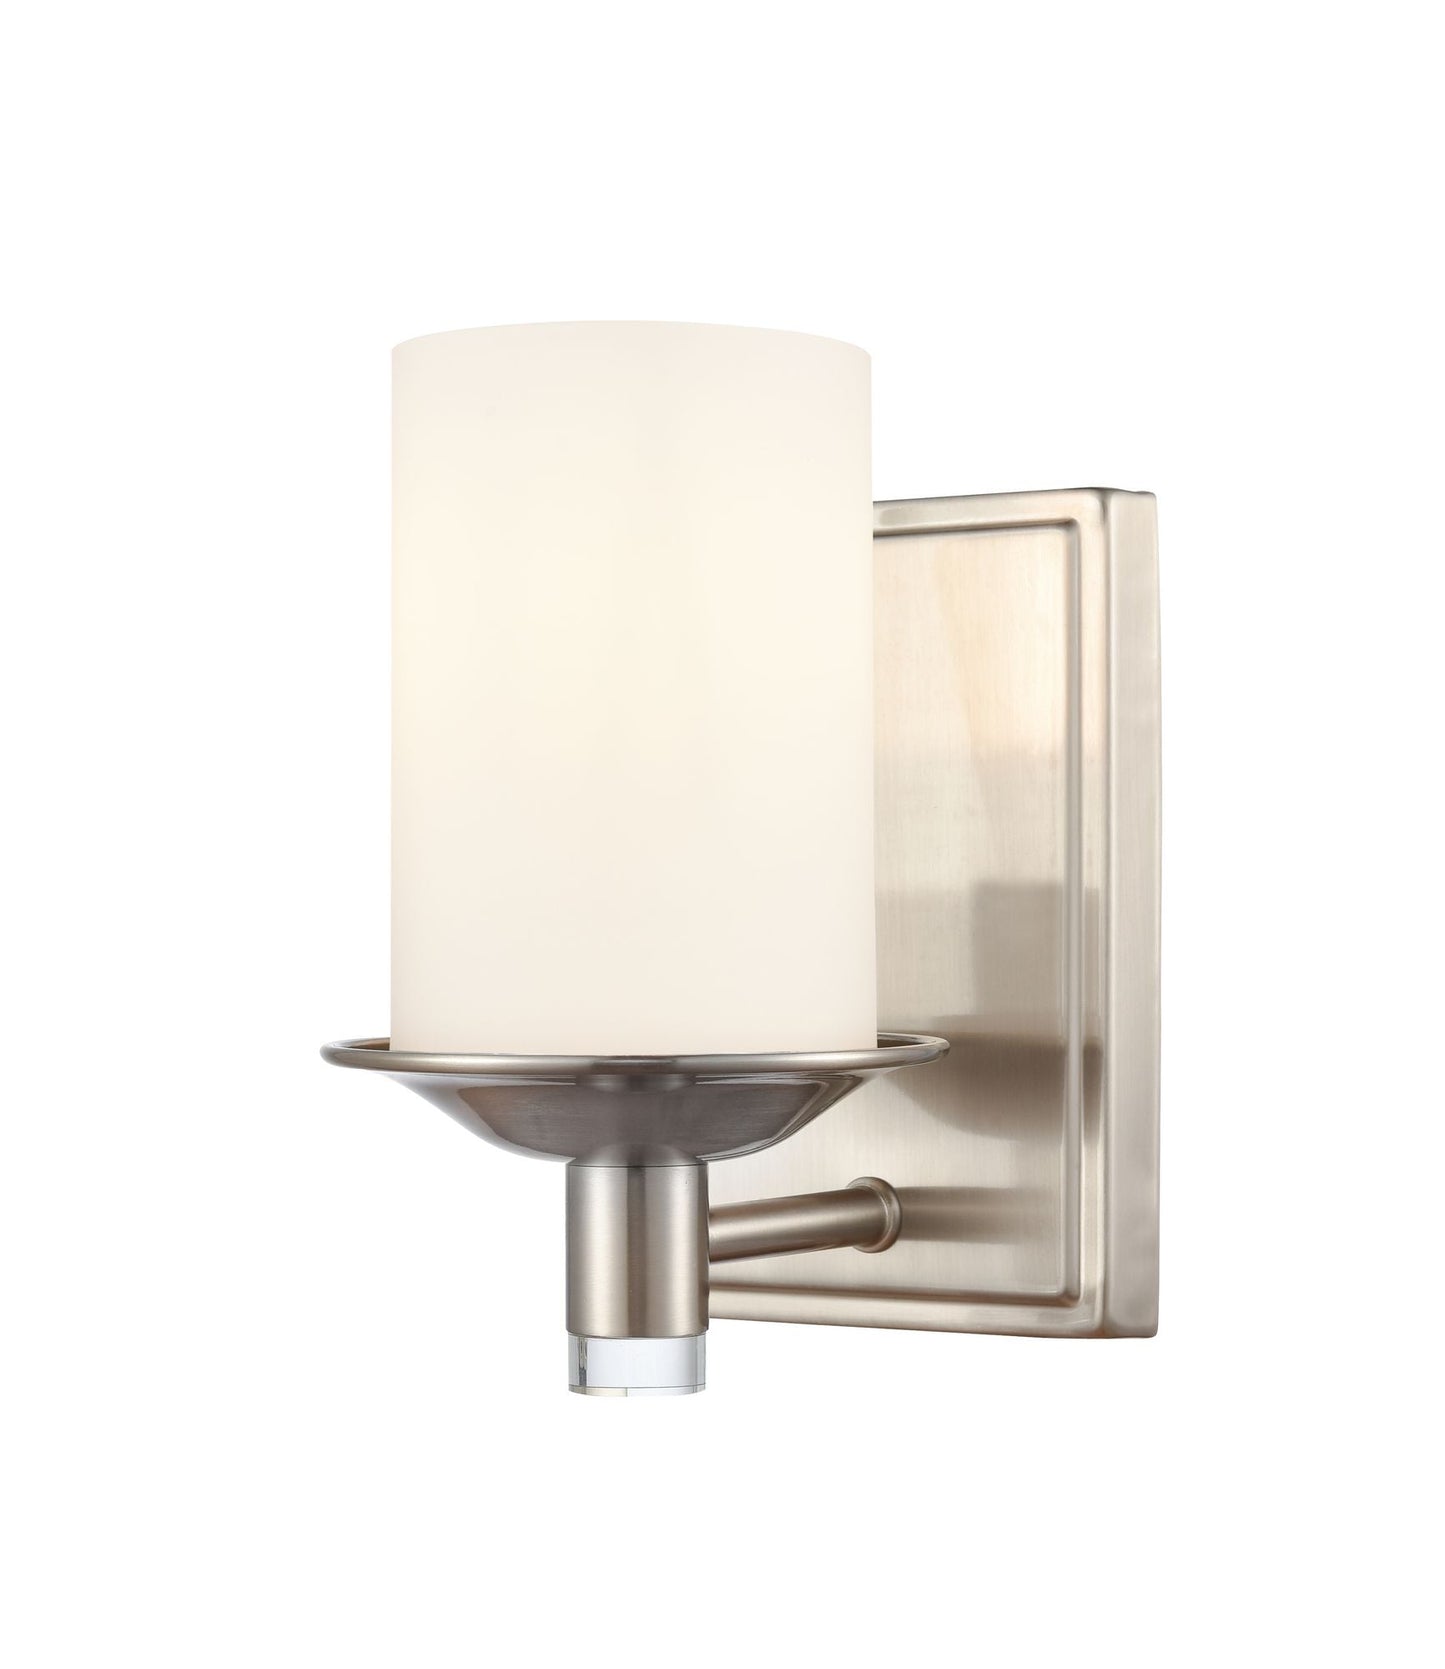 1-Light 4.75" Matte Black Bath Vanity Light - White Manhattan Glass Glass Shade Included LED